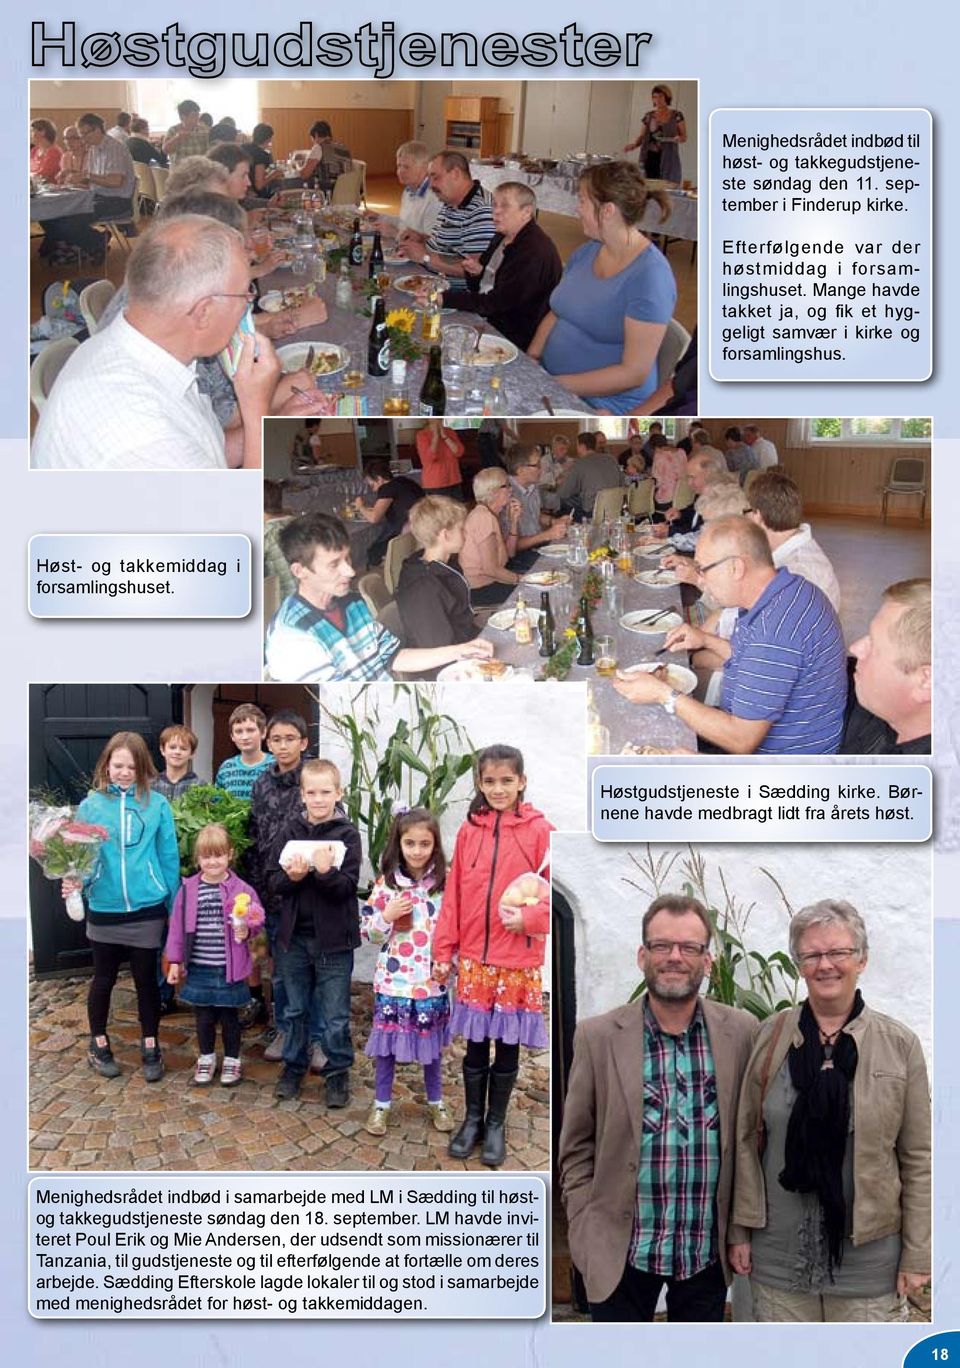 Børnene havde medbragt lidt fra årets høst. Menighedsrådet indbød i samarbejde med LM i Sædding til høstog takkegudstjeneste søndag den 18. september.